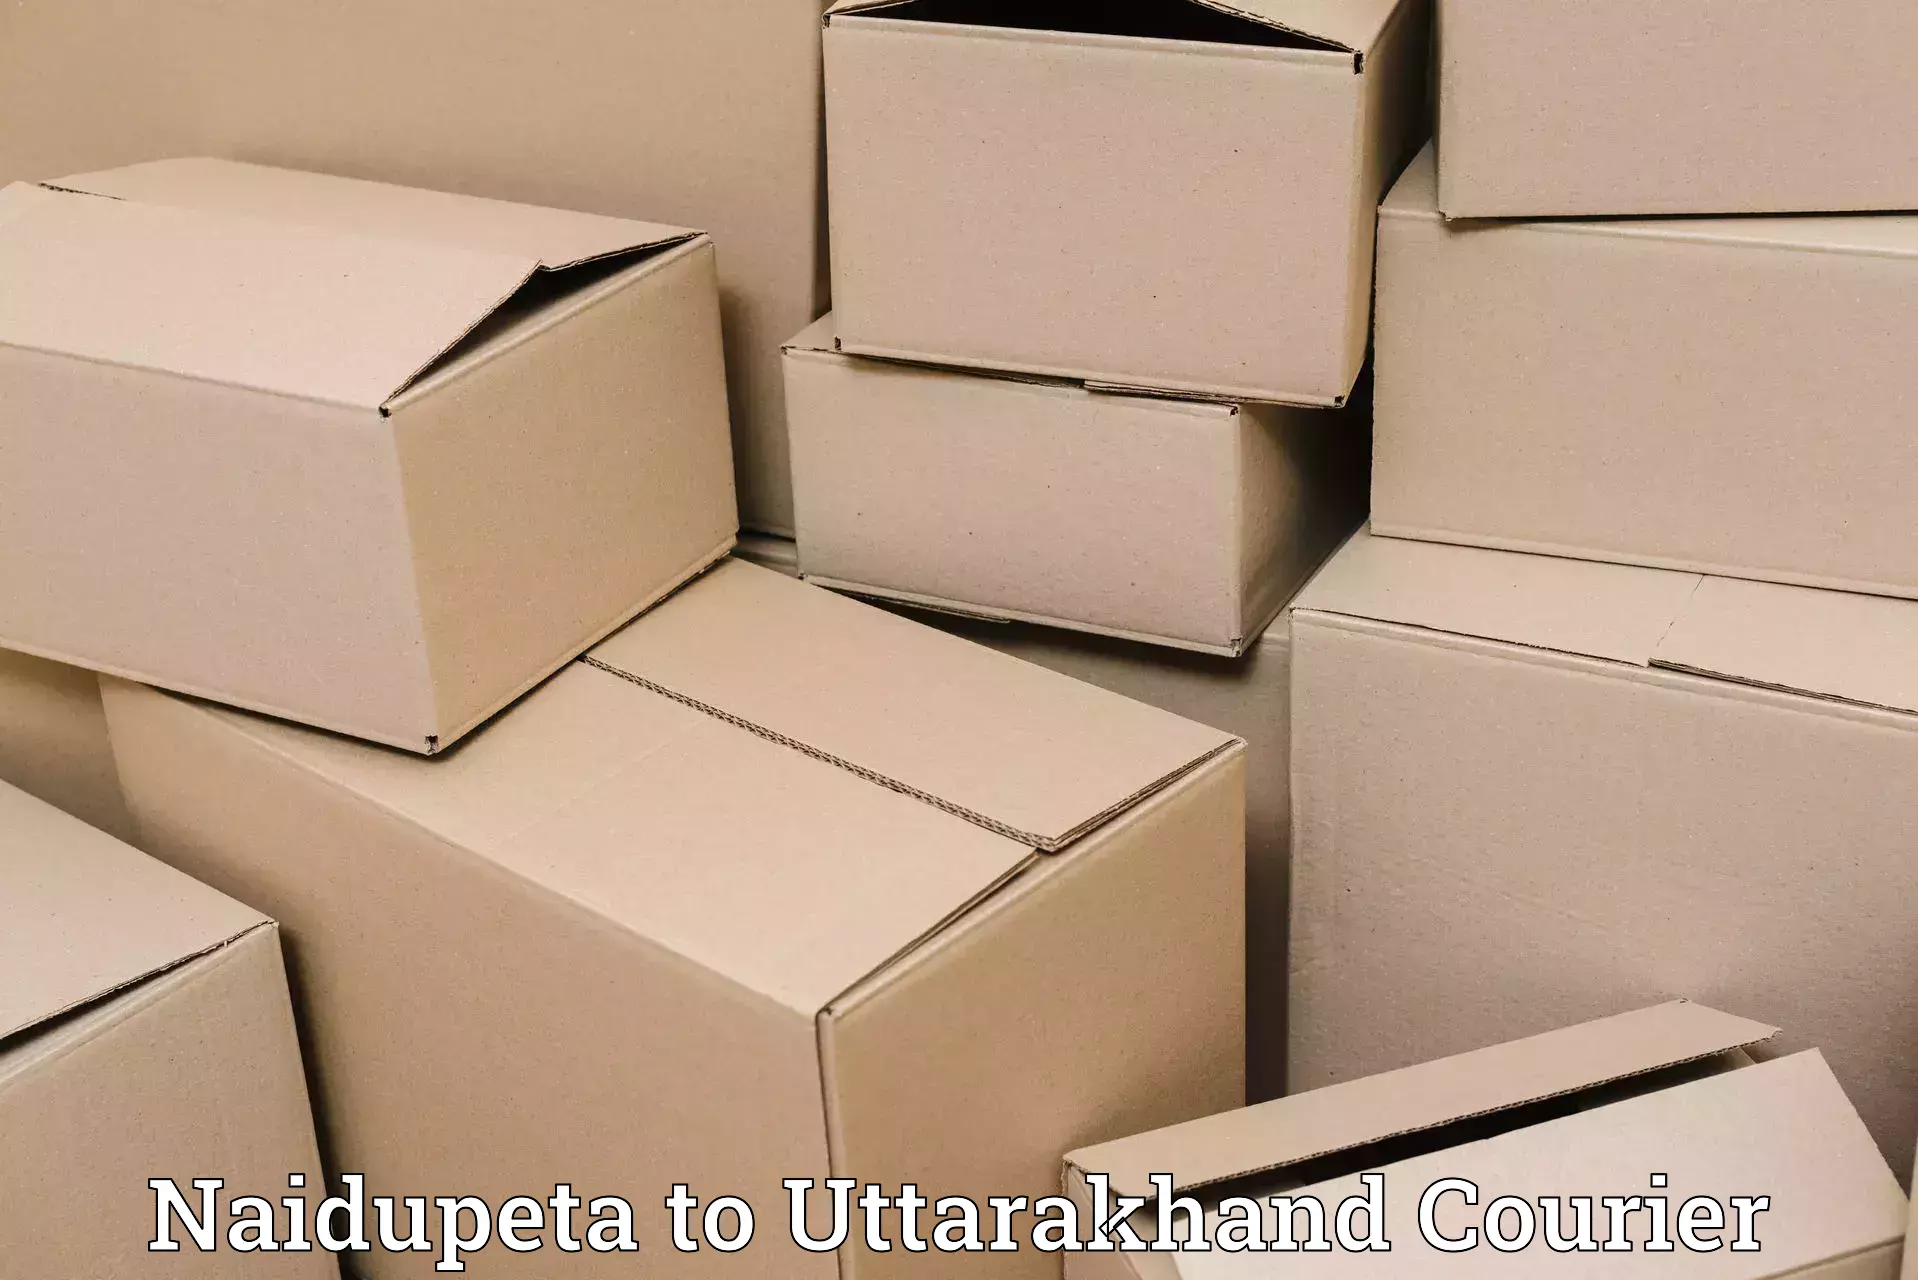 24/7 courier service Naidupeta to Doiwala